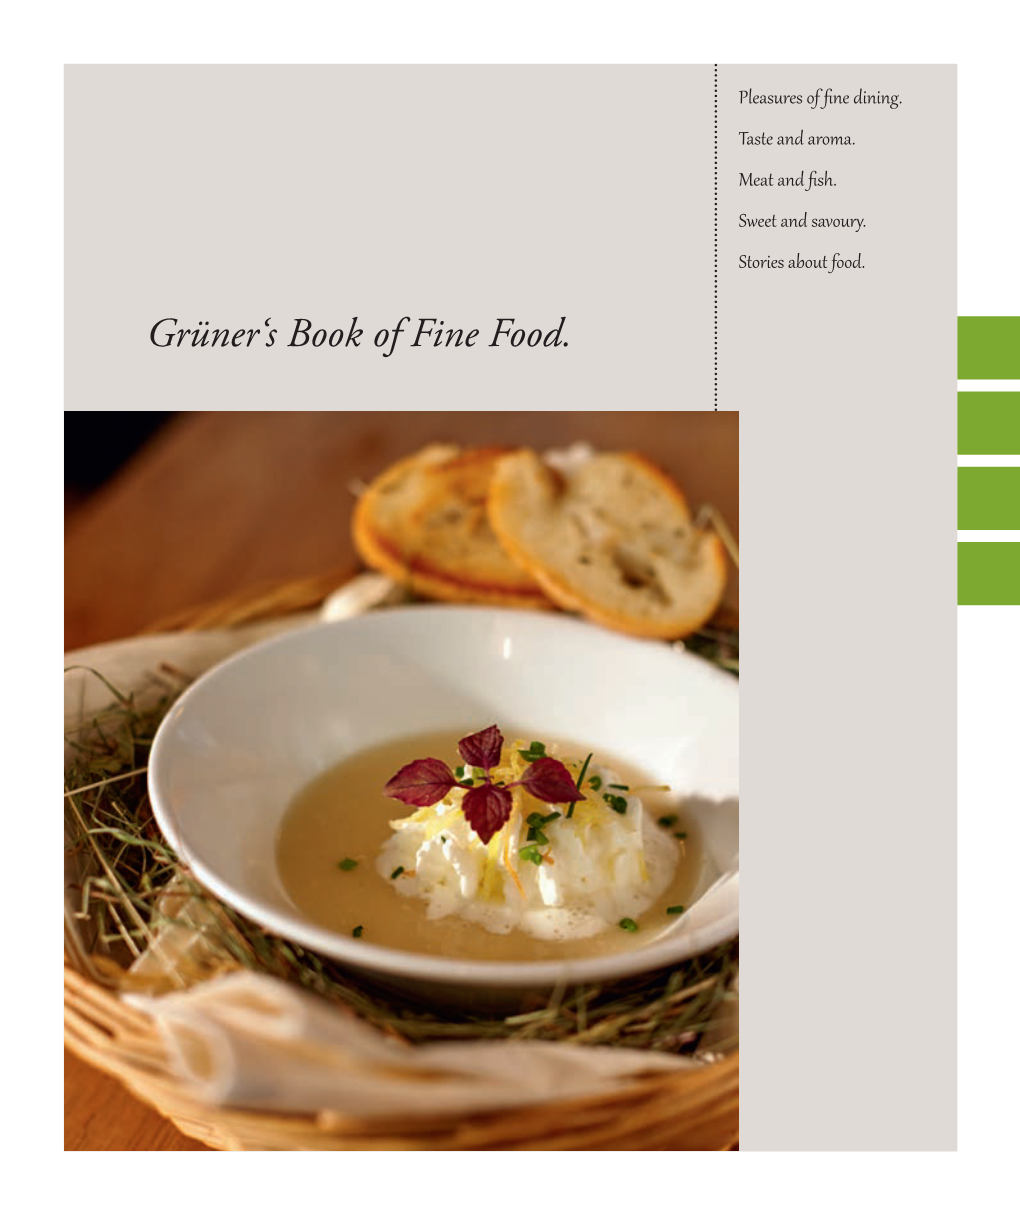 Grüner's Book of Fine Food